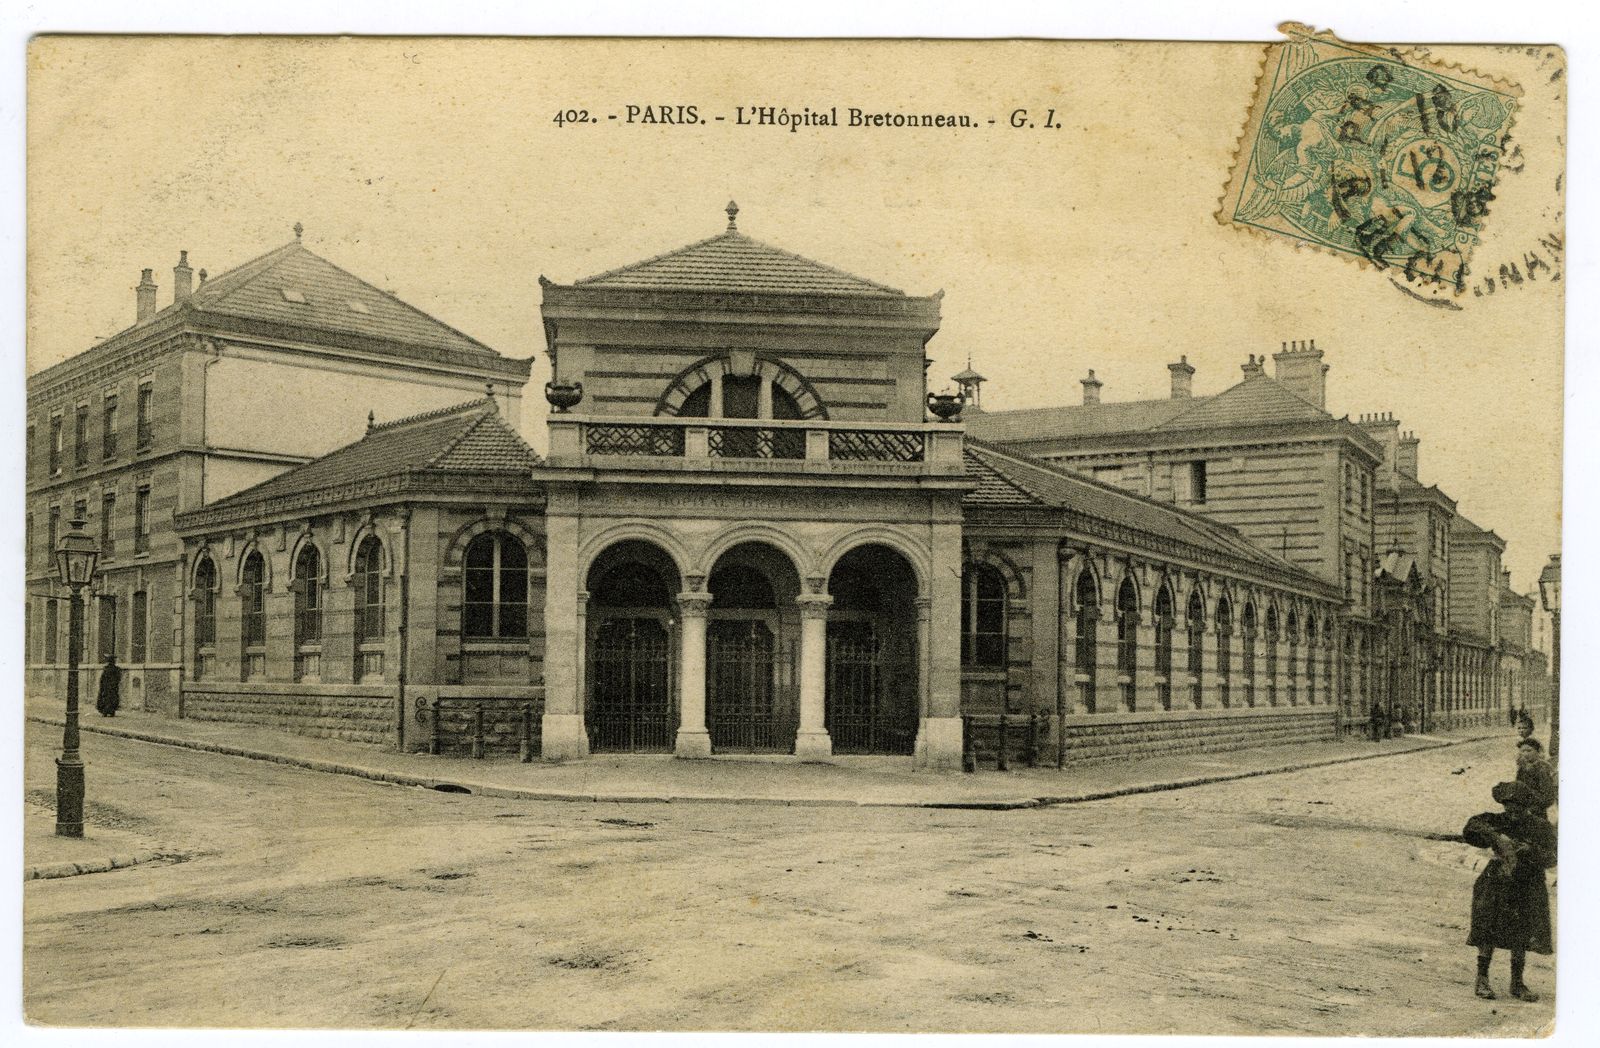 Entrée de l'hôpital Bretonneau, 1910.